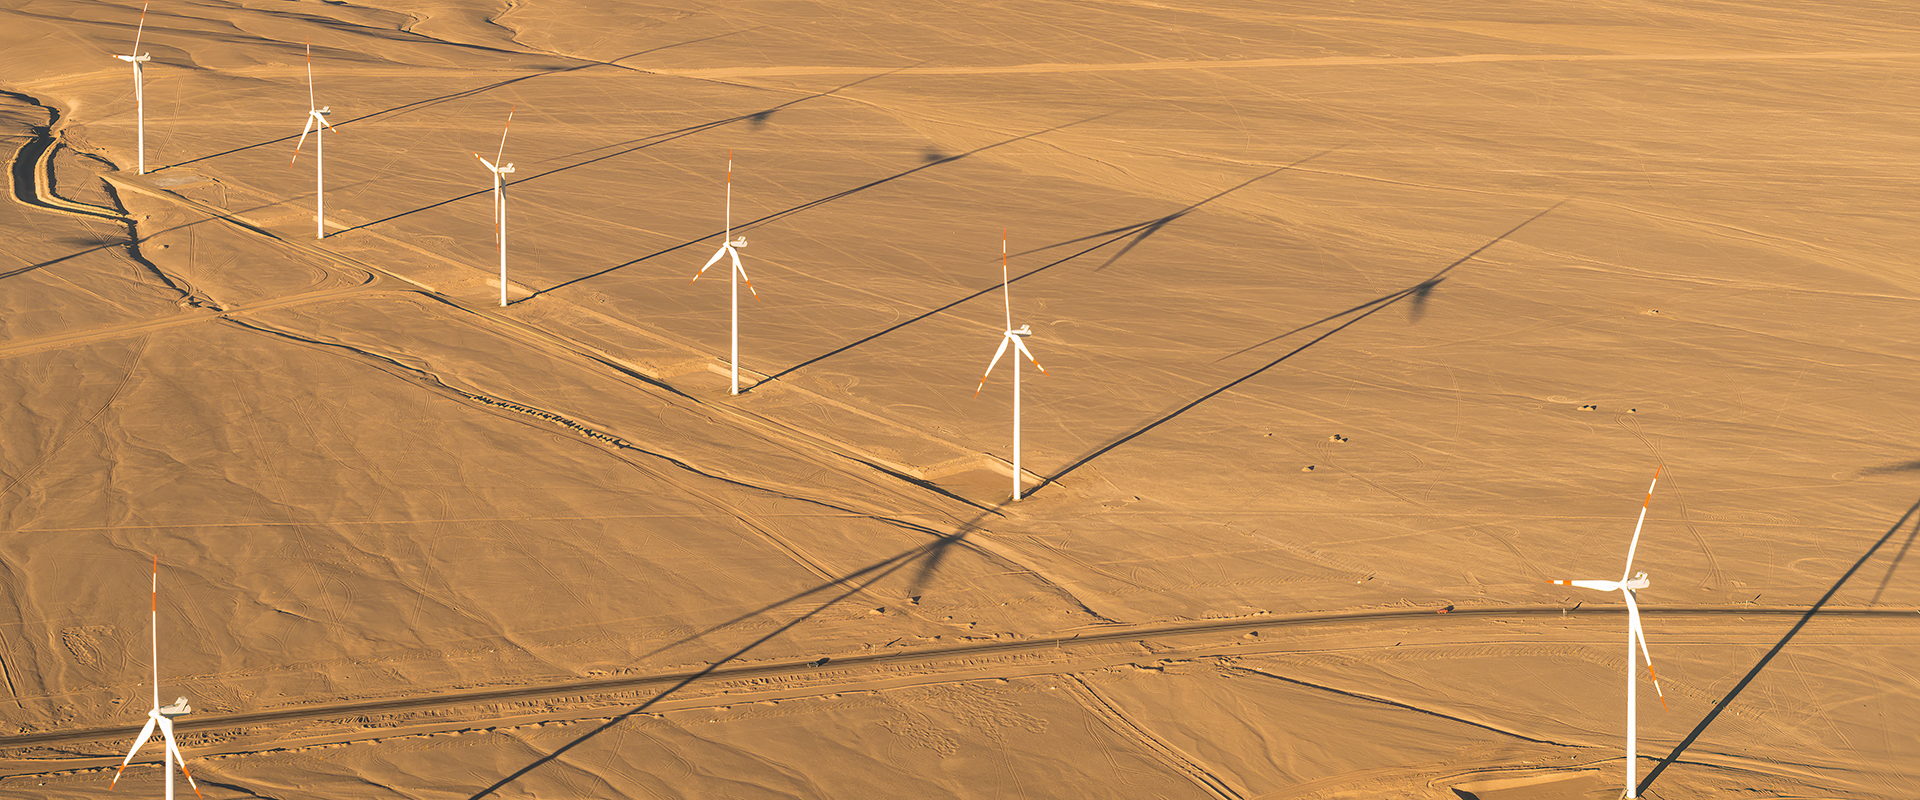 Windkrafträder in der Wüste